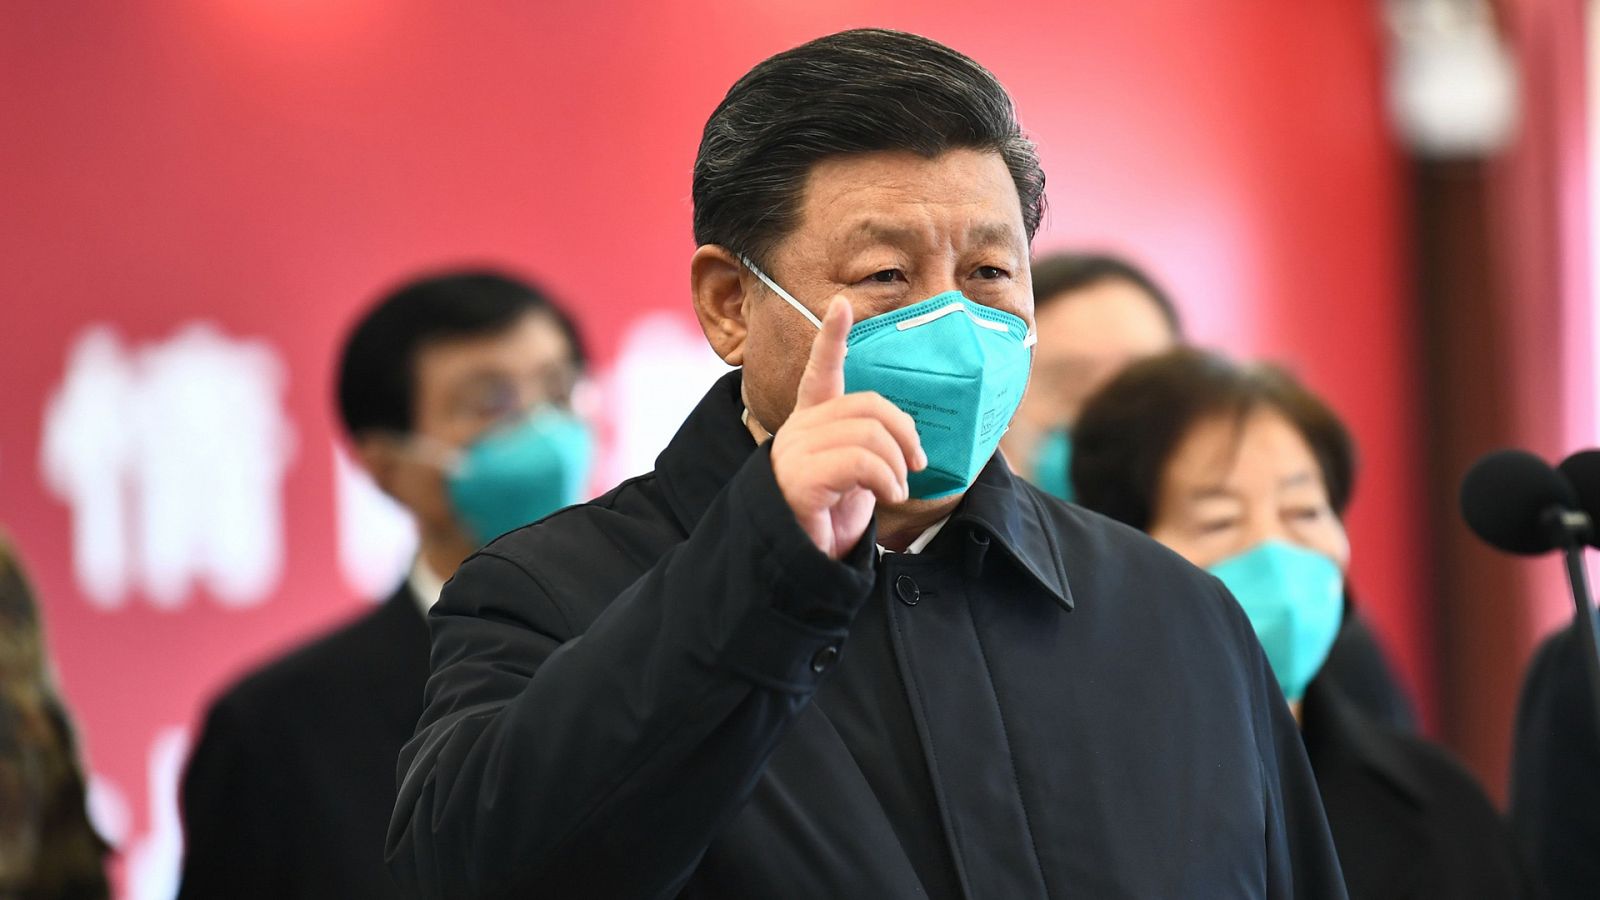 Vídeo: El presidente de China, Xi Jinping, visita la zona cero del coronavirus